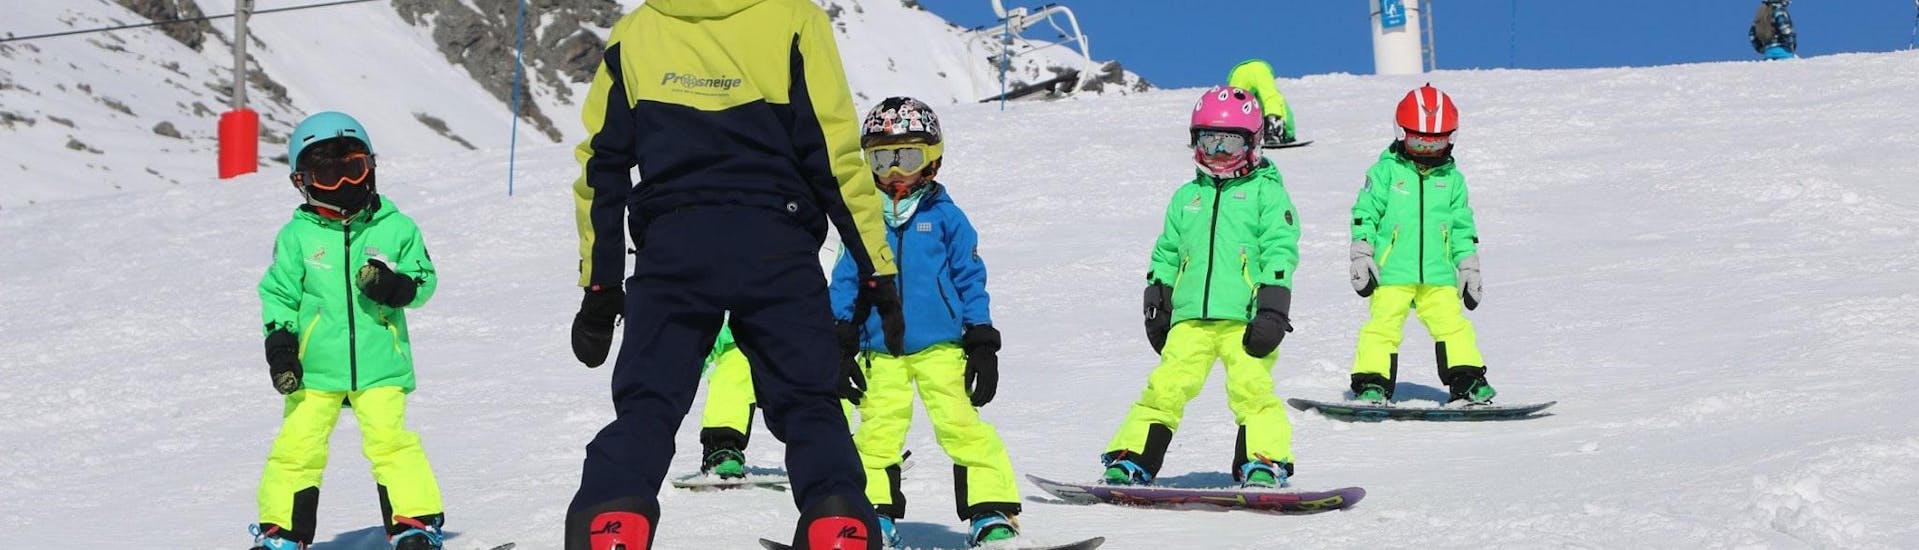 Een ski-instructeur van de skischool Prosneige Méribel is lachende kinderen snowboarden aan het leren tijdens Snowboardlessen voor Kinderen van Alle Leeftijden en Alle Niveaus.